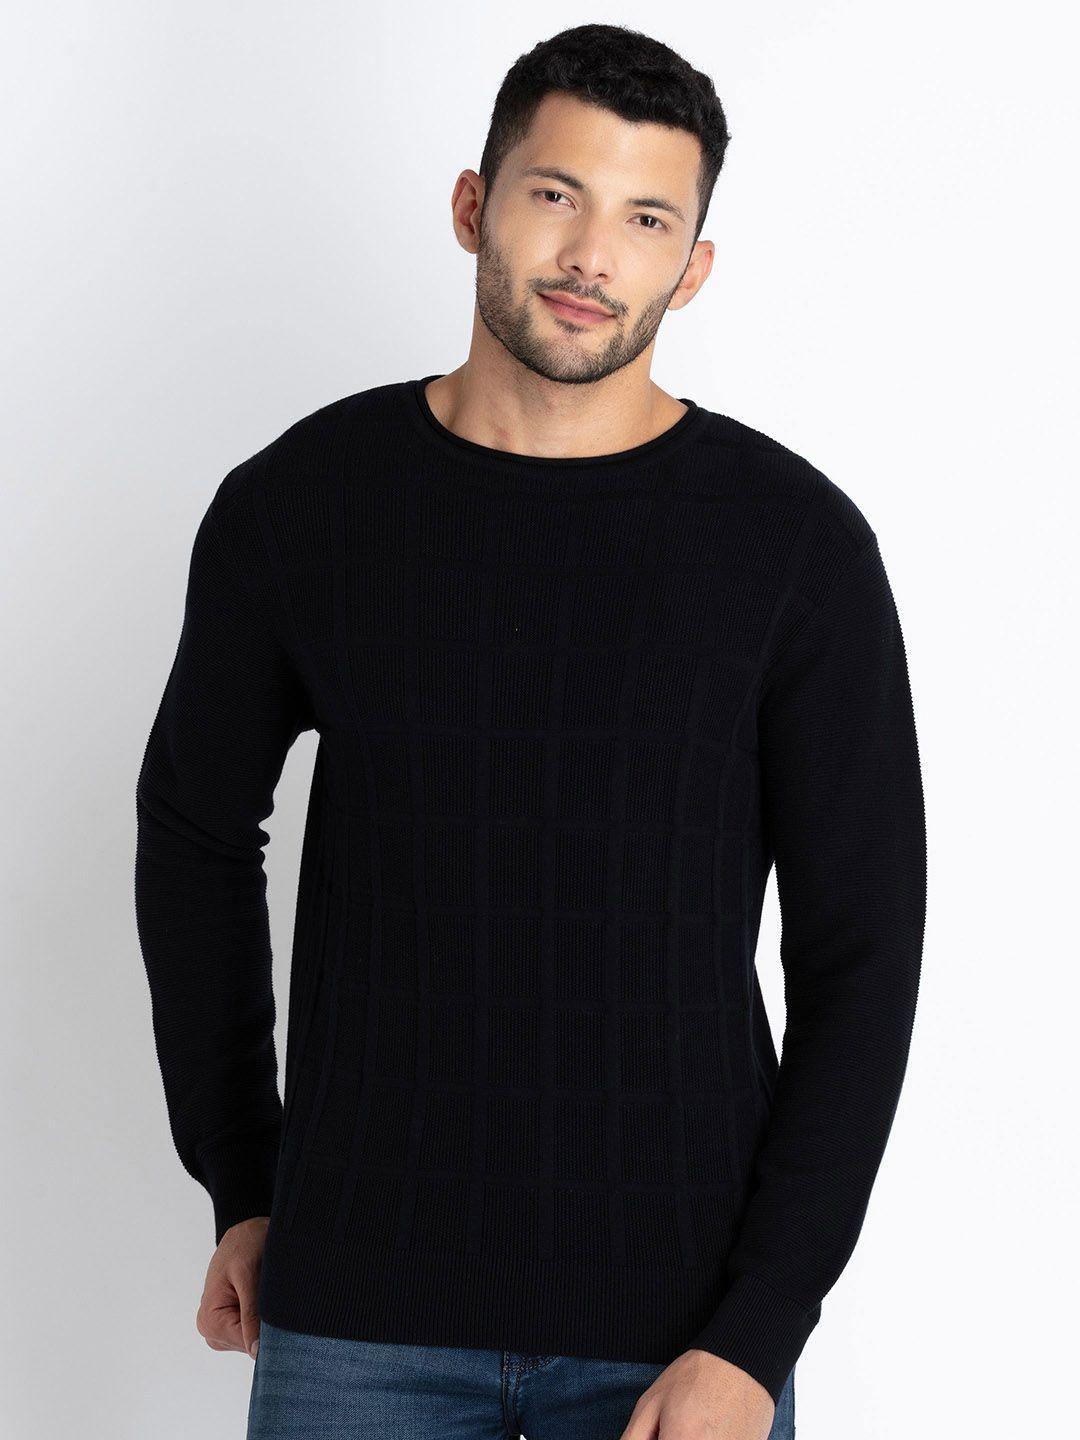 status quo cotton pullover sweater